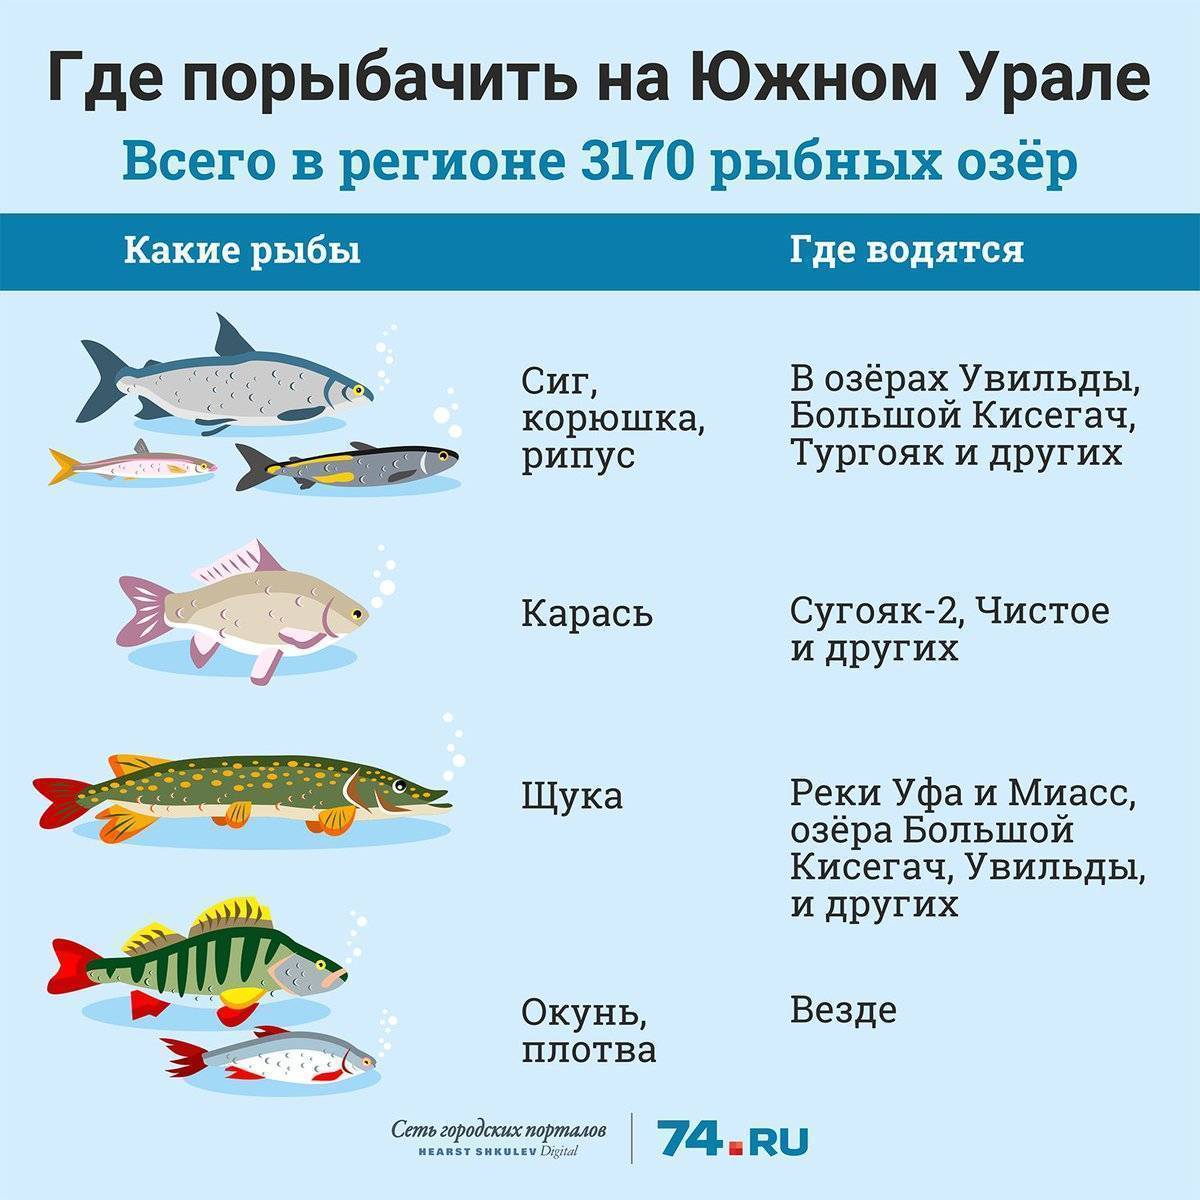 Рыбалка на волге в тверской области - особенности, лучшие места и отзывы :: syl.ru